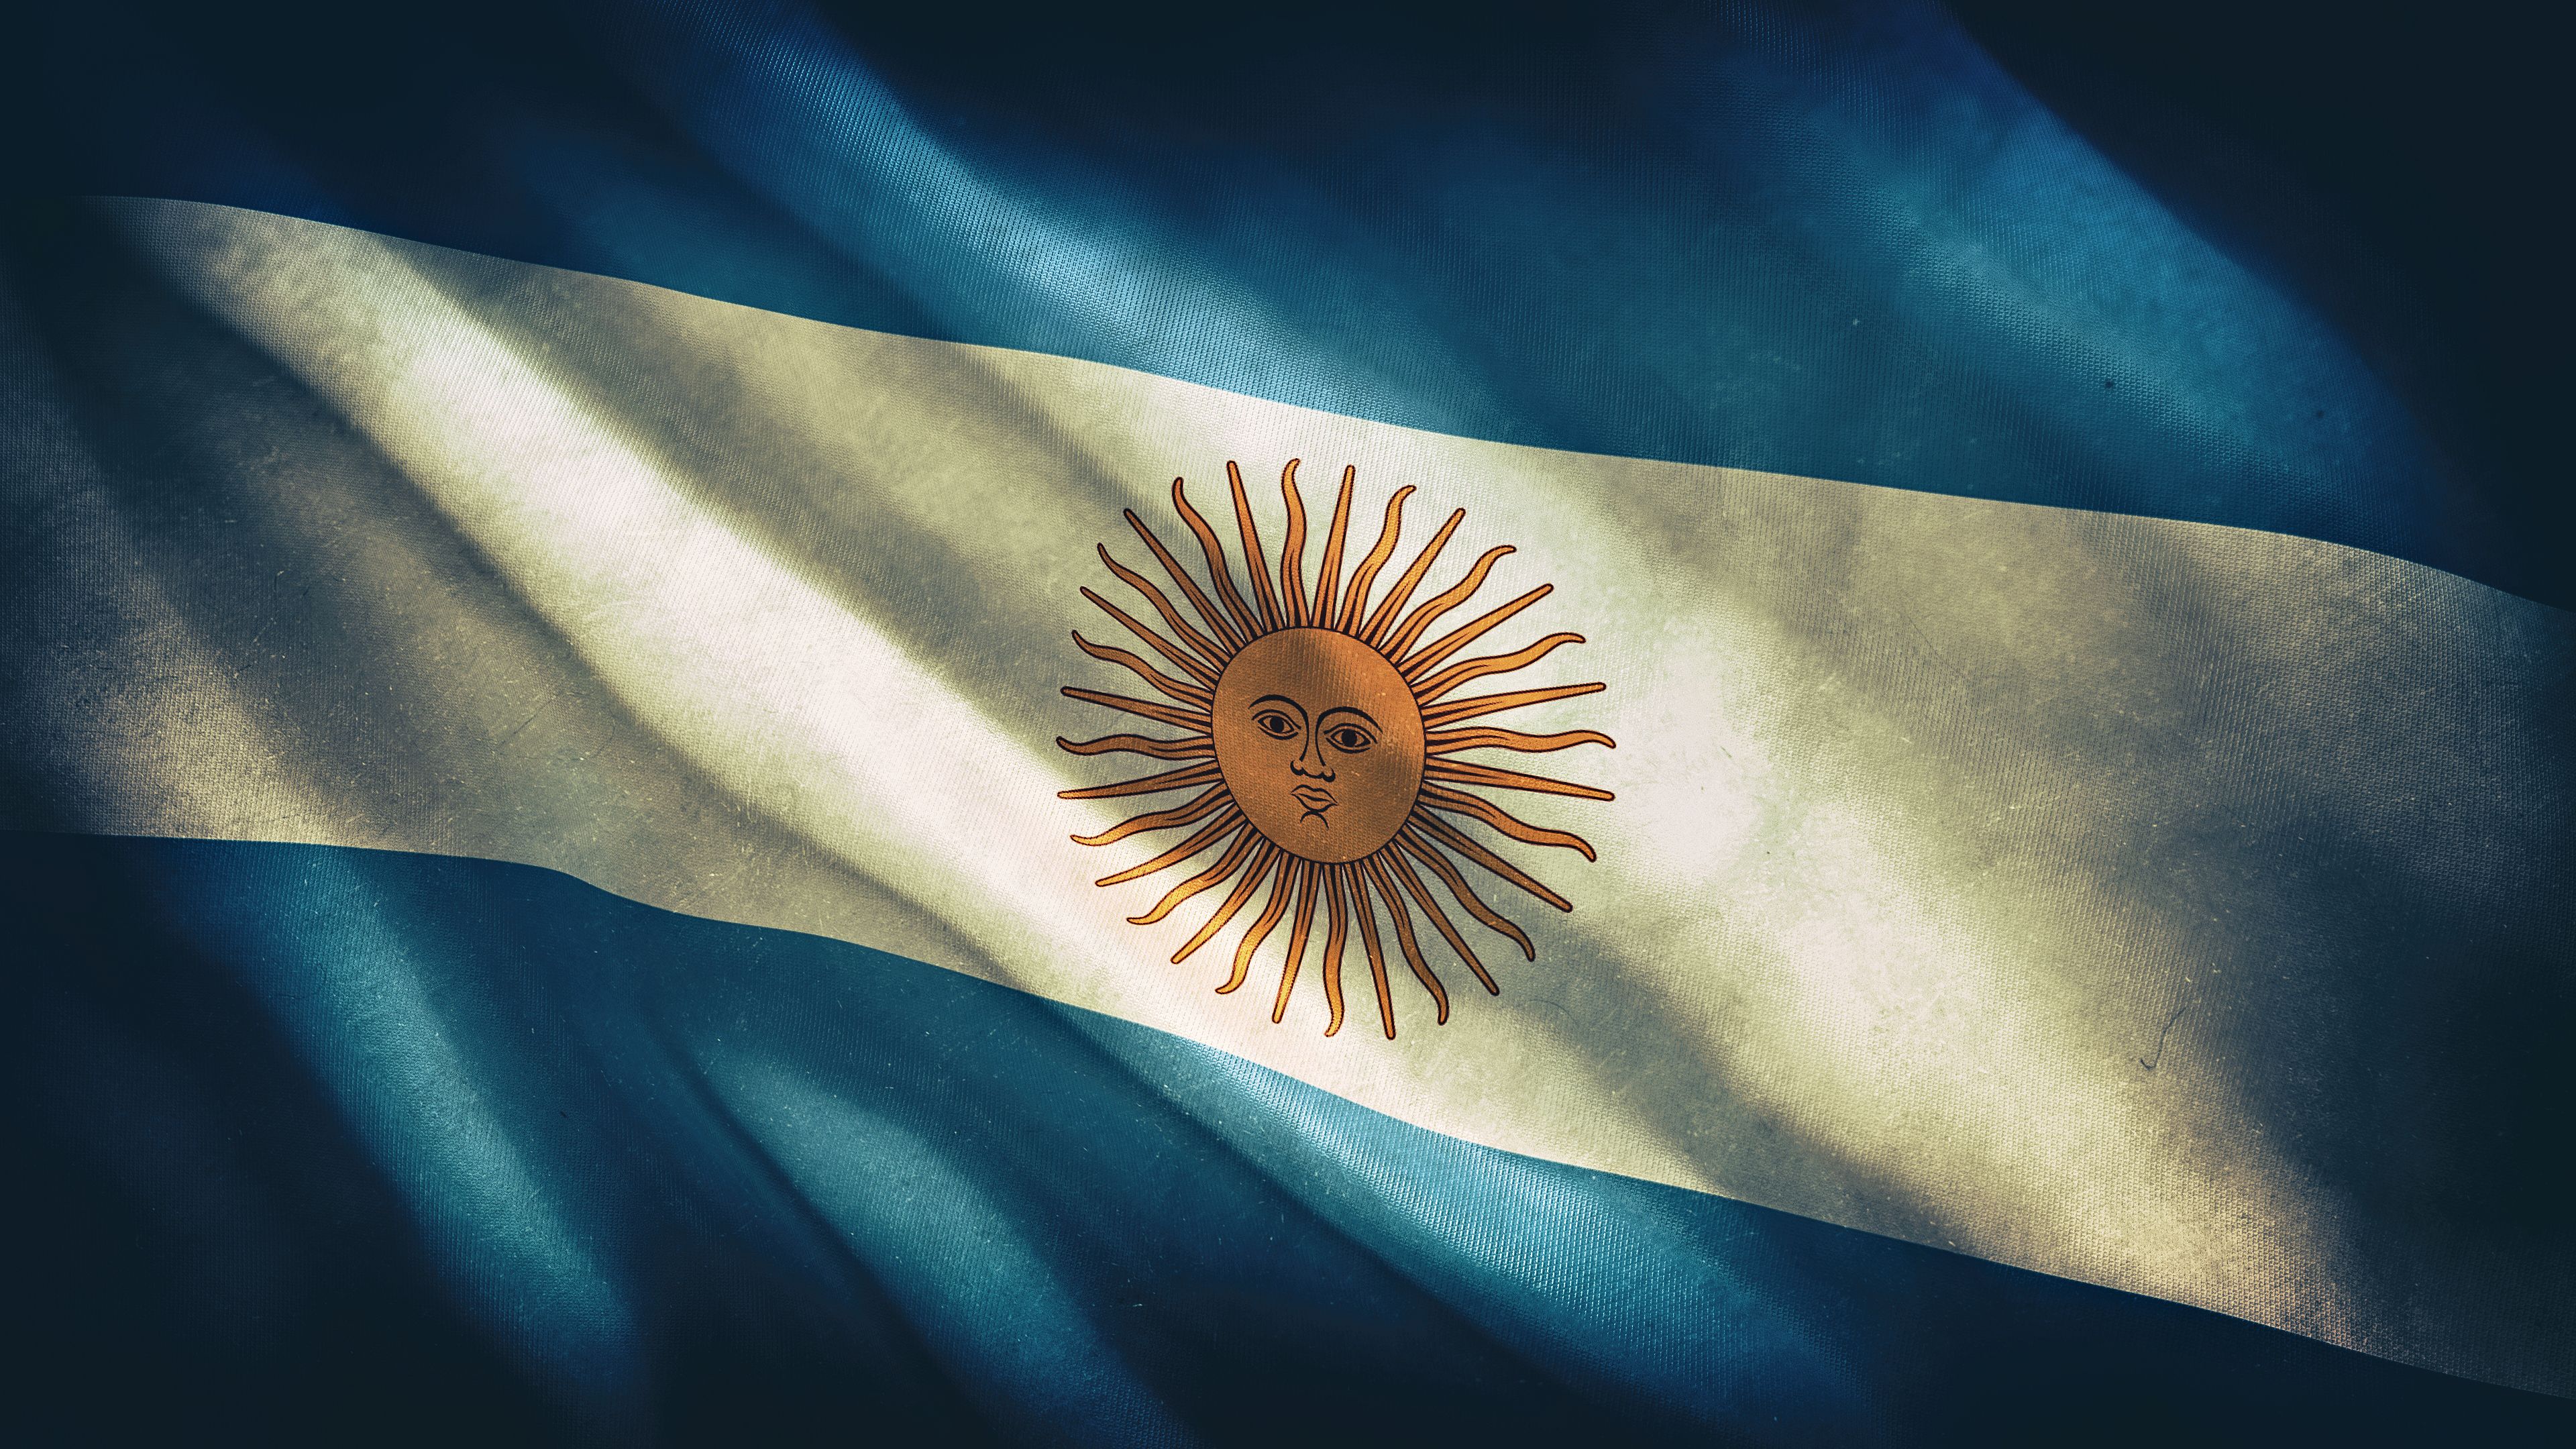 Fondos de pantalla de la bandera argentina - FondosMil